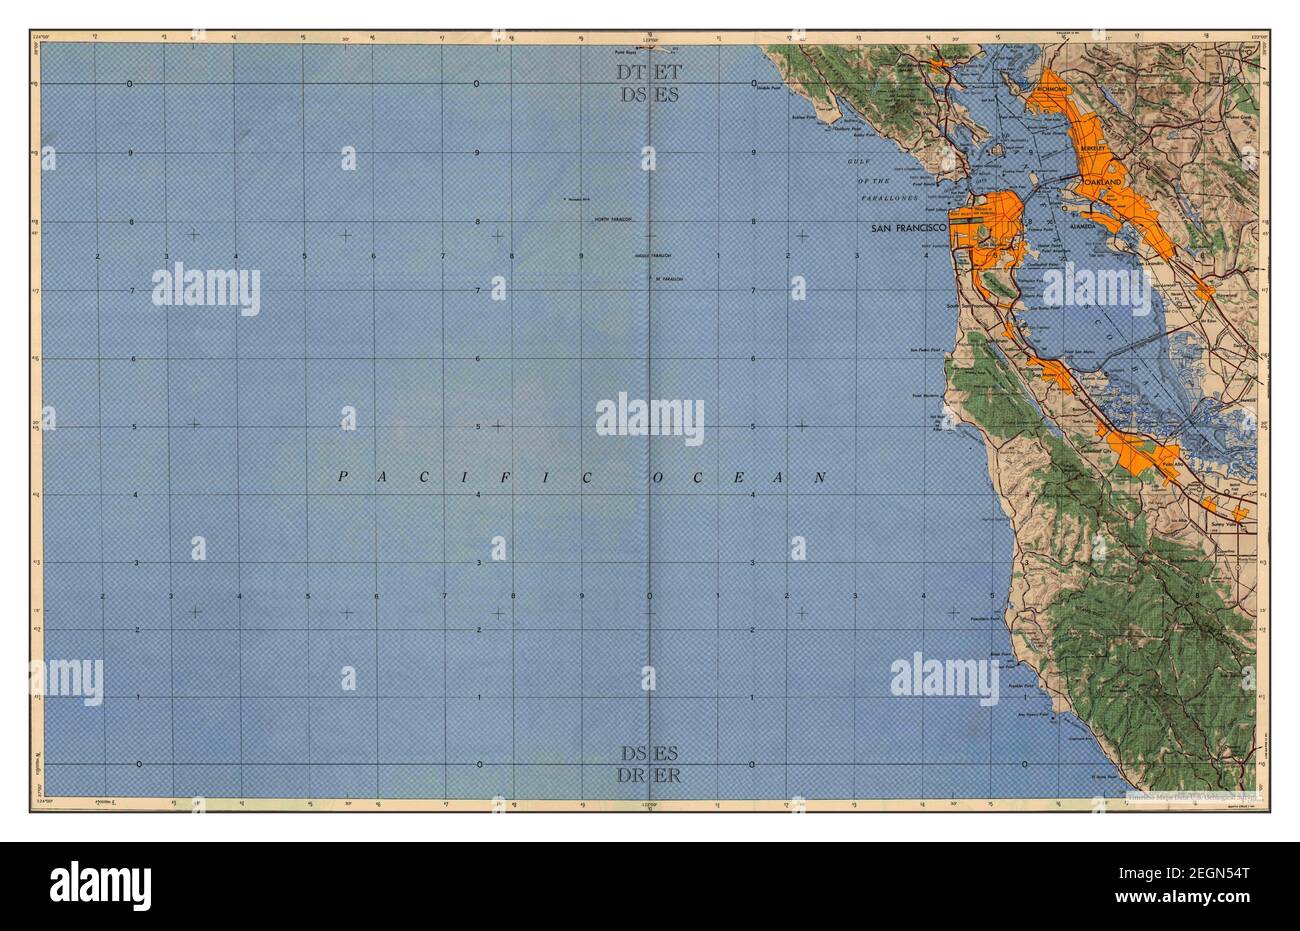 San Francisco, California, Karte 1955, 1:250000, Vereinigte Staaten von Amerika von Timeless Maps, Daten U.S. Geological Survey Stockfoto